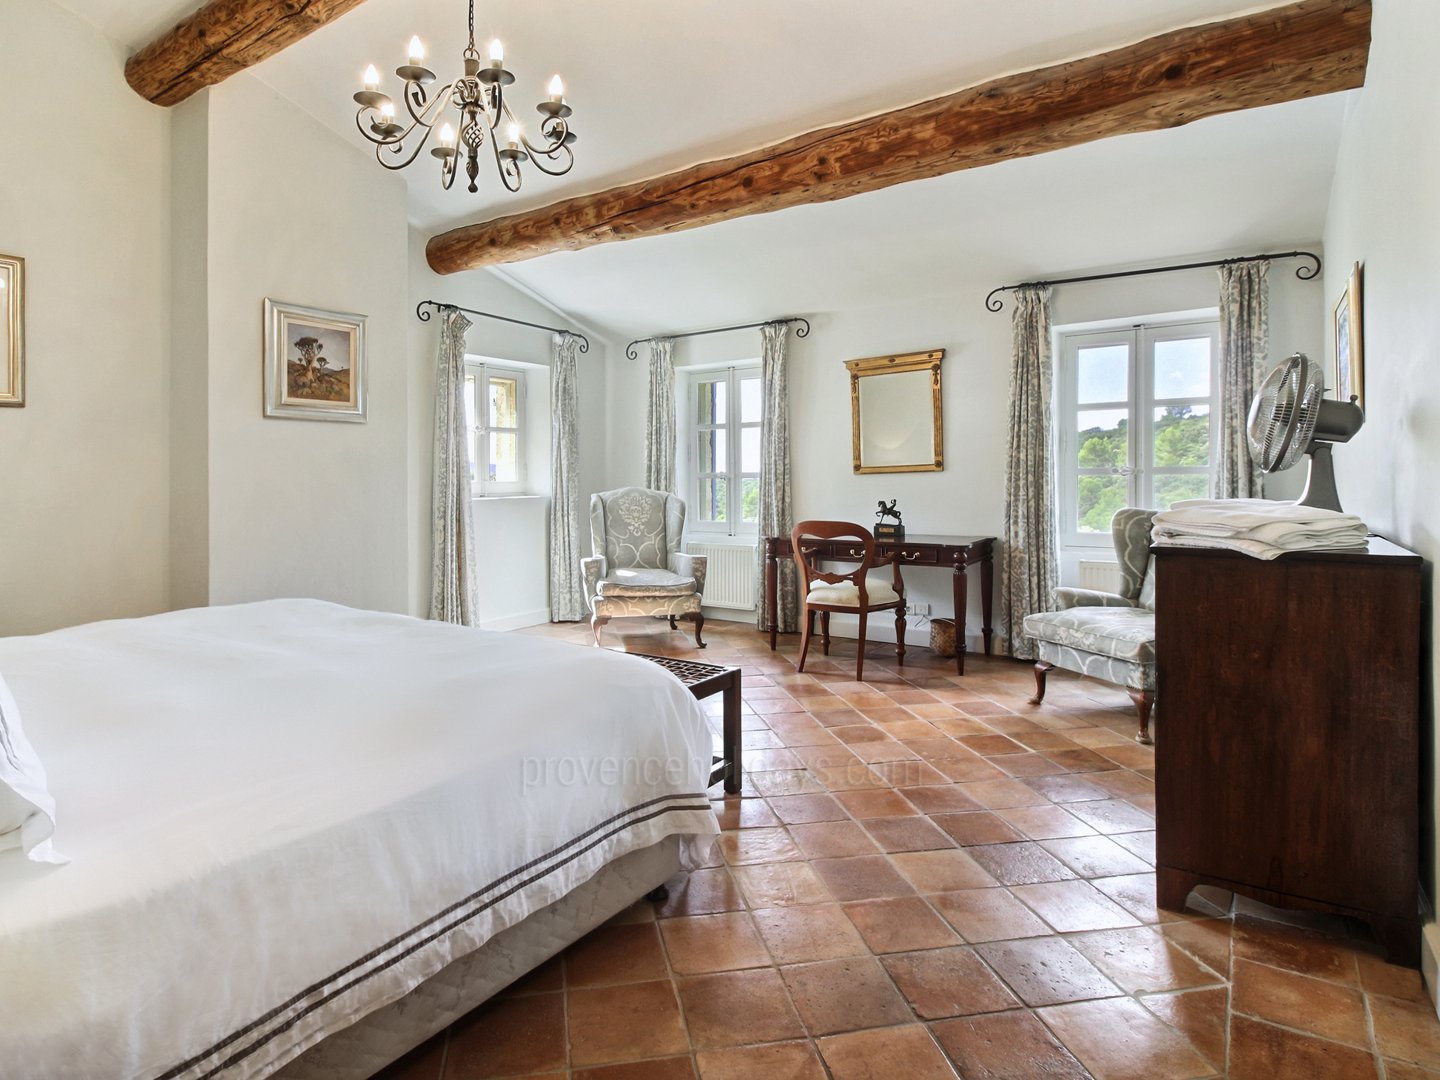 46 - Le Mas de Bonnieux: Villa: Bedroom